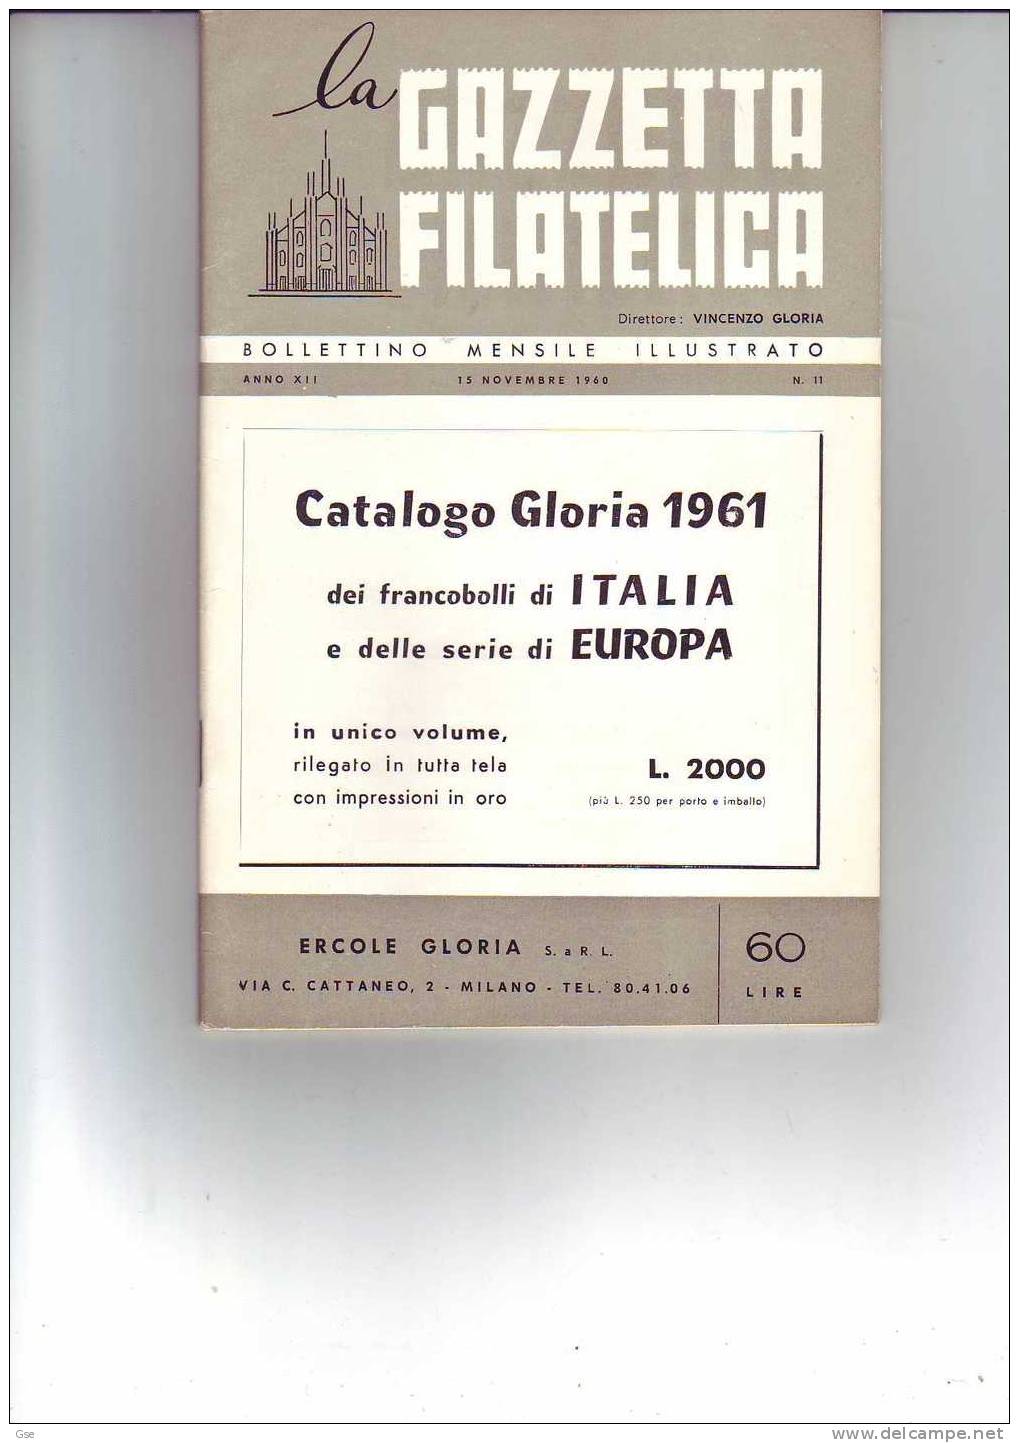 LA GAZZETTA FILATELICA (V.Gloria) - # 11 (1969) - Ottimo Stato - Italian (from 1941)